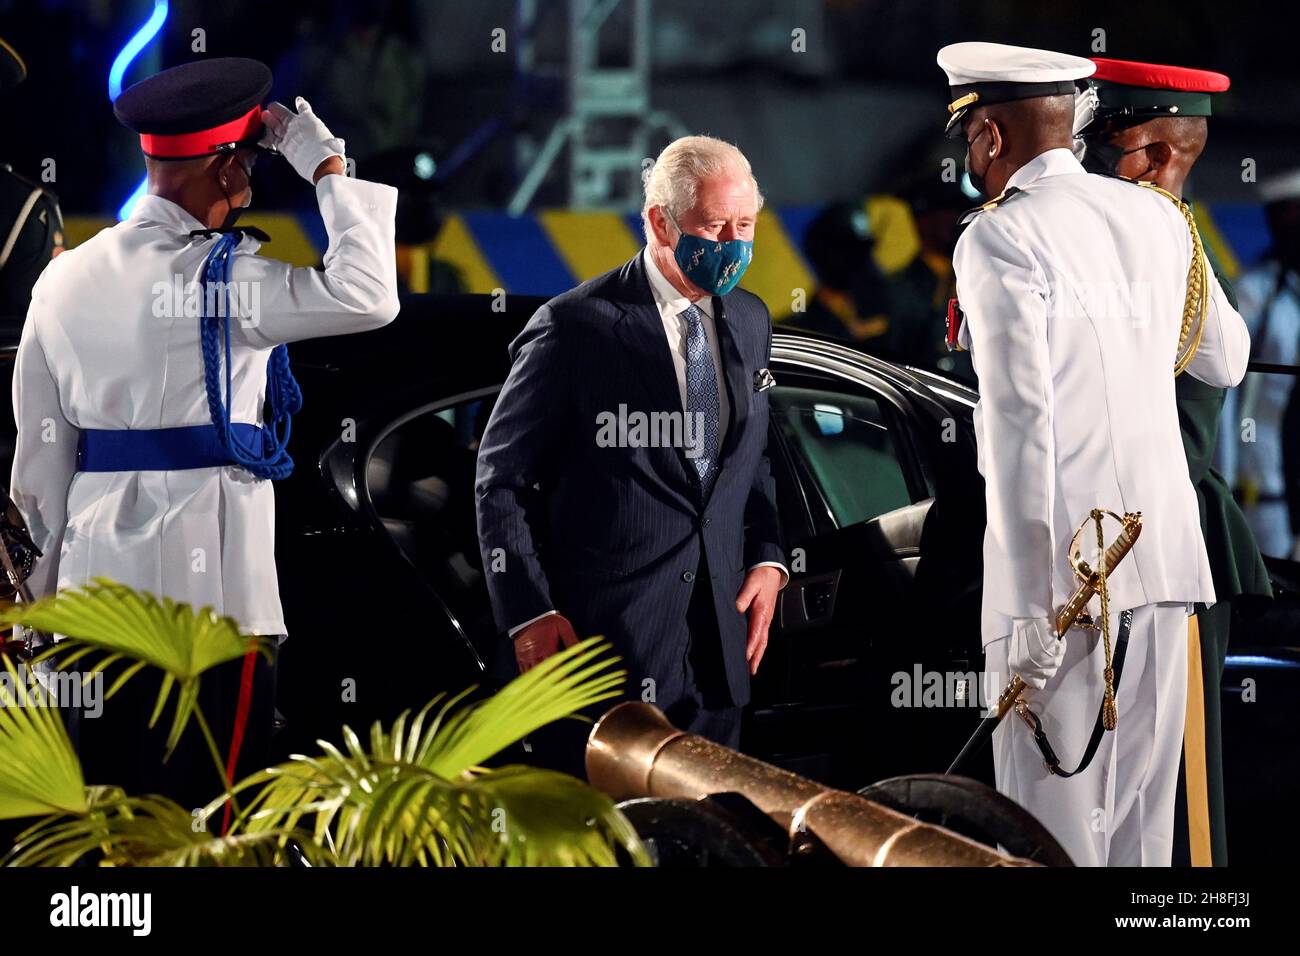 Der Prinz von Wales kommt zur feierlichen Einweihung des Präsidenten, um die Geburt einer neuen republik in Barbados, Bridgetown, Barbados, zu feiern. Bilddatum: Montag, 29. November 2021. Stockfoto